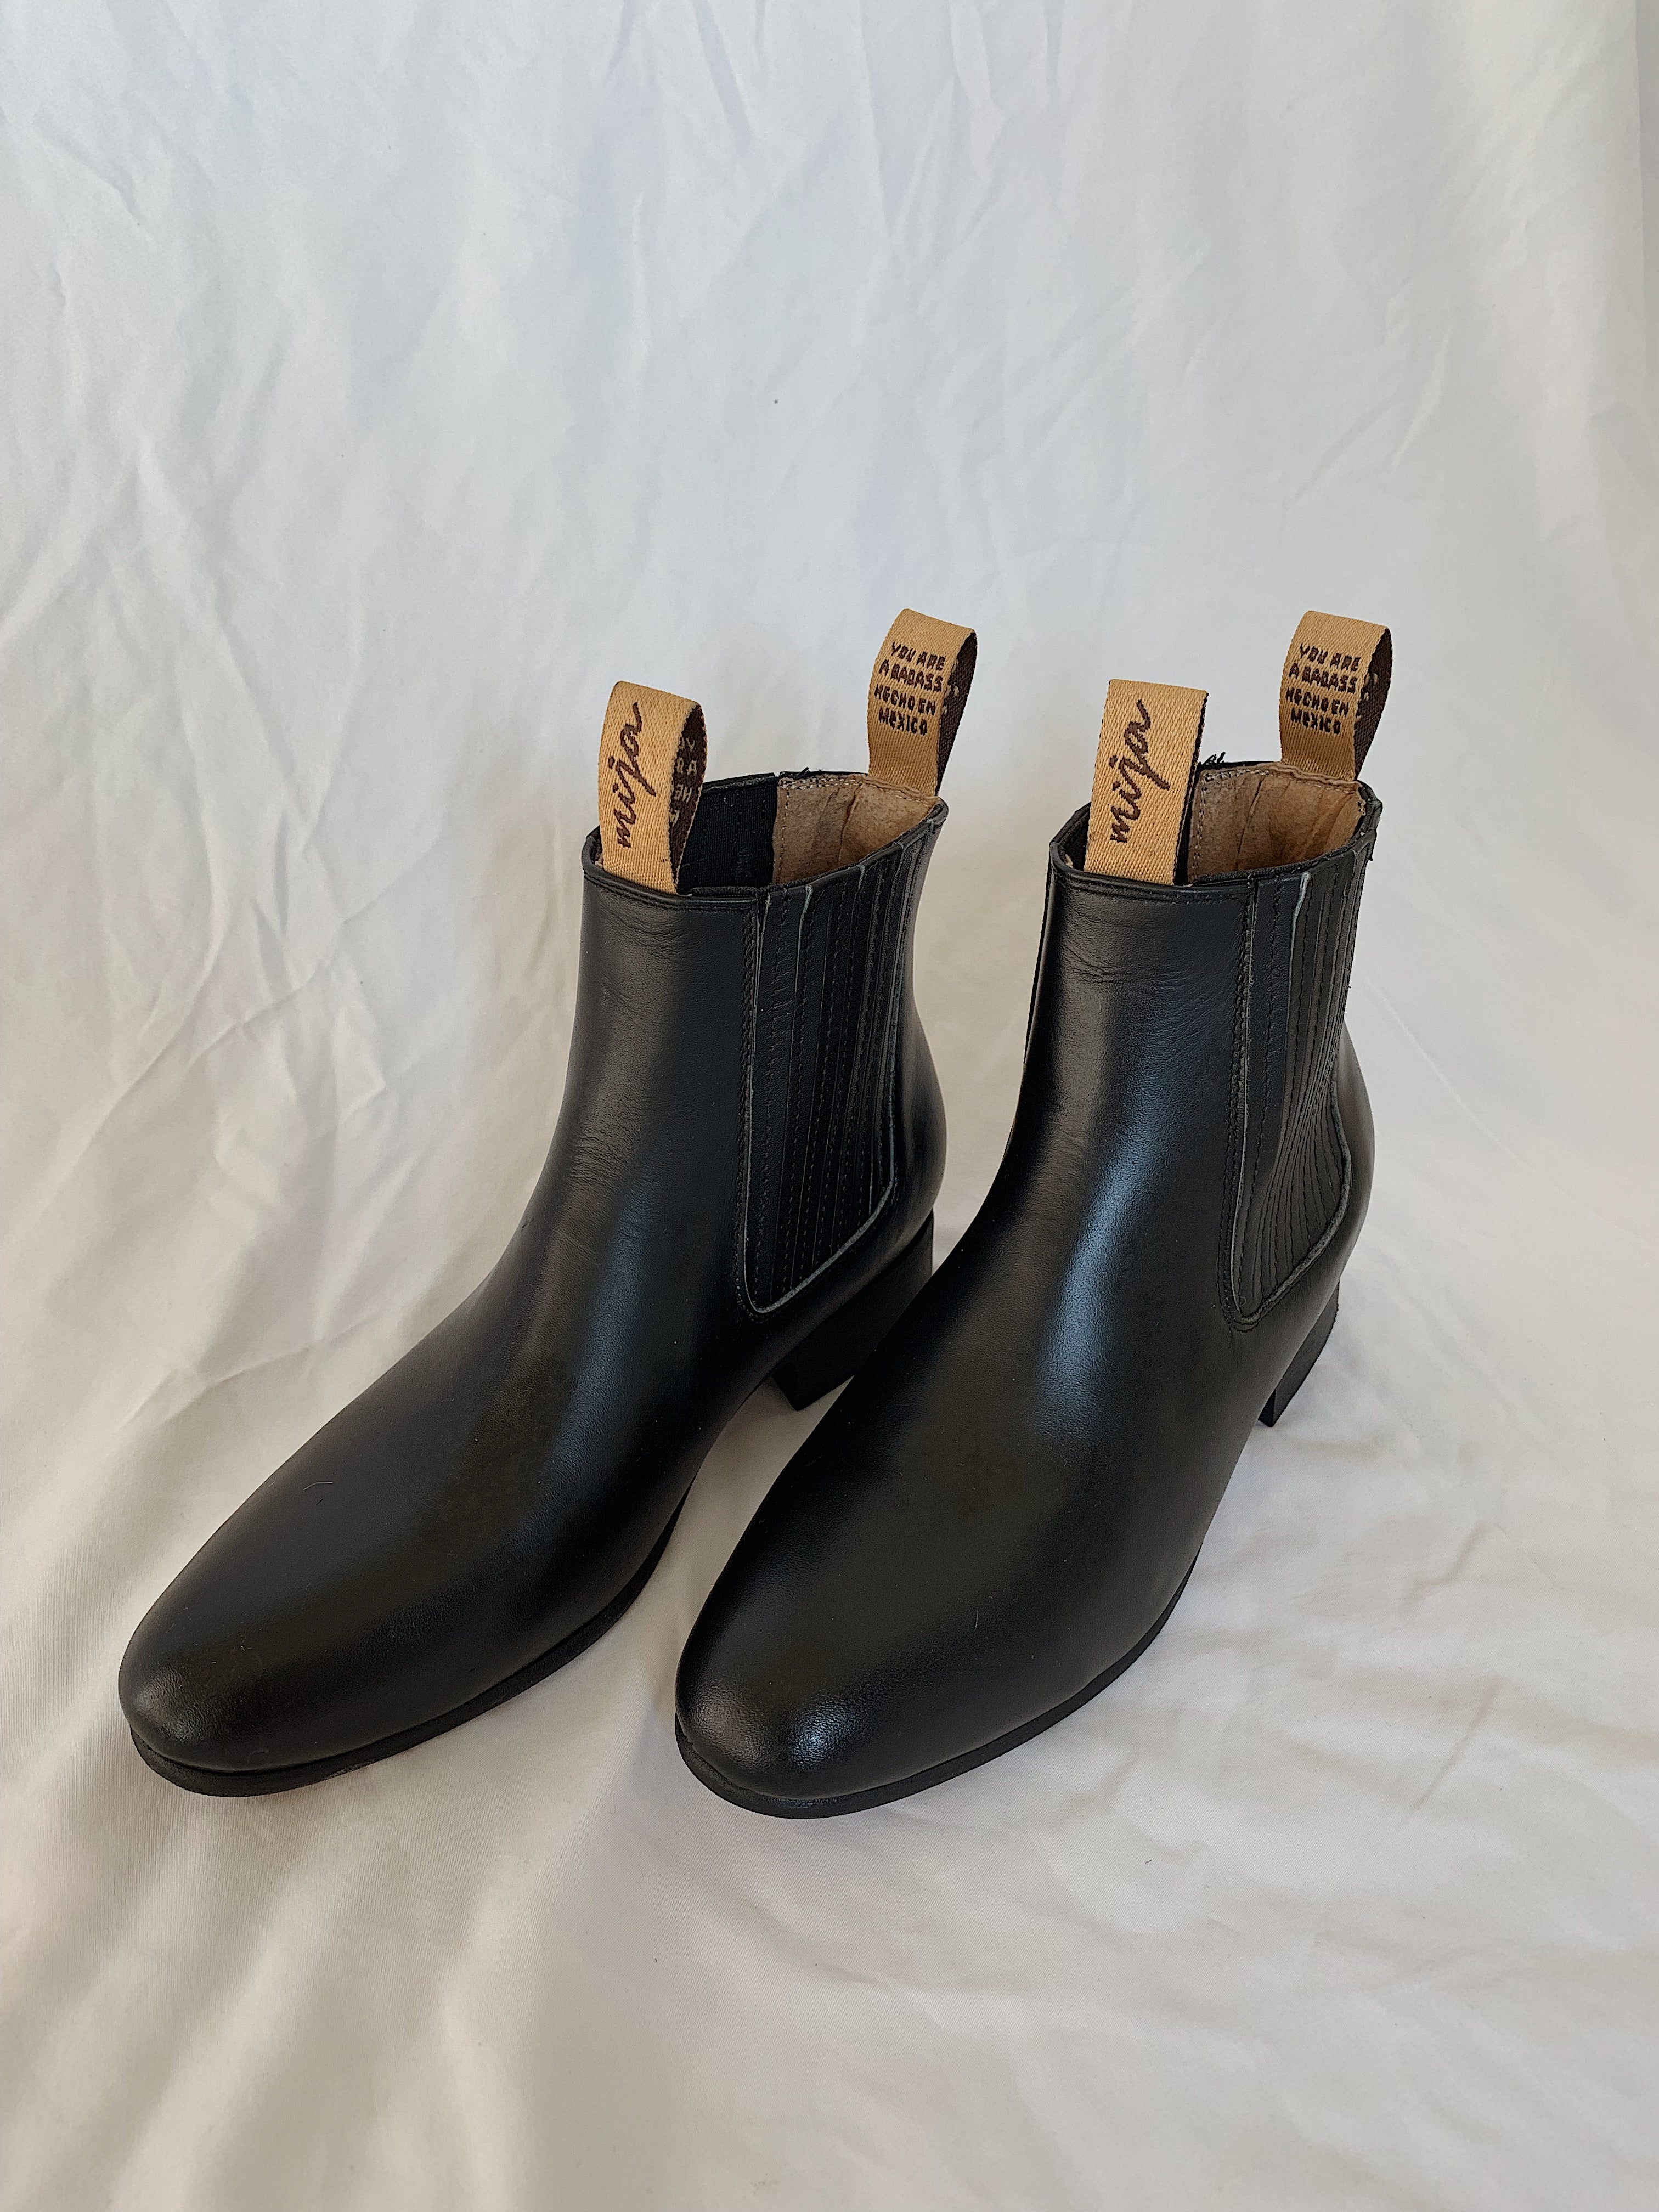 Classic Mijas – Mija boots